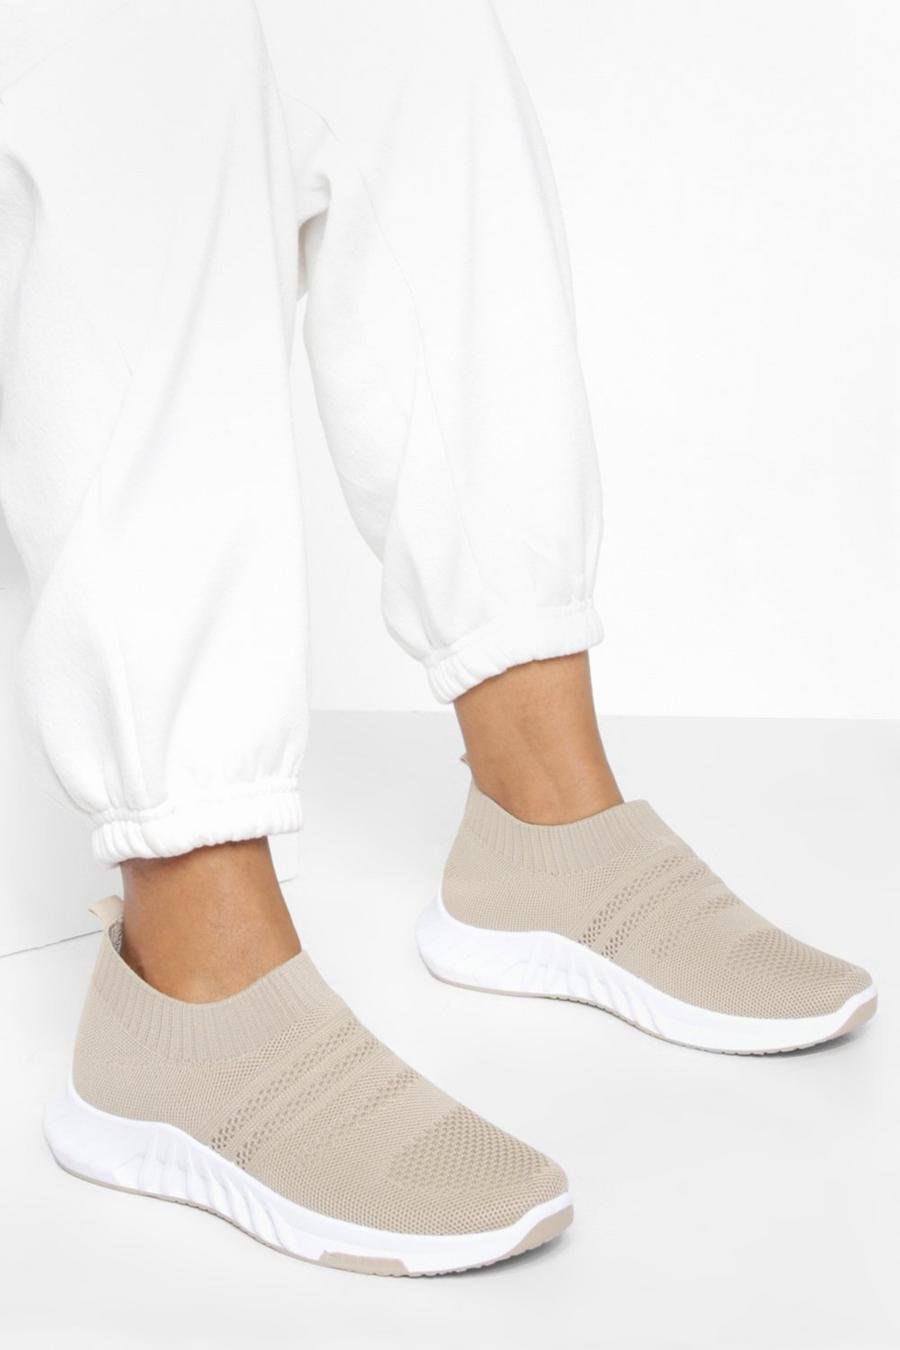 Stone beige Wide Width Low Knitted Sock Sneakers